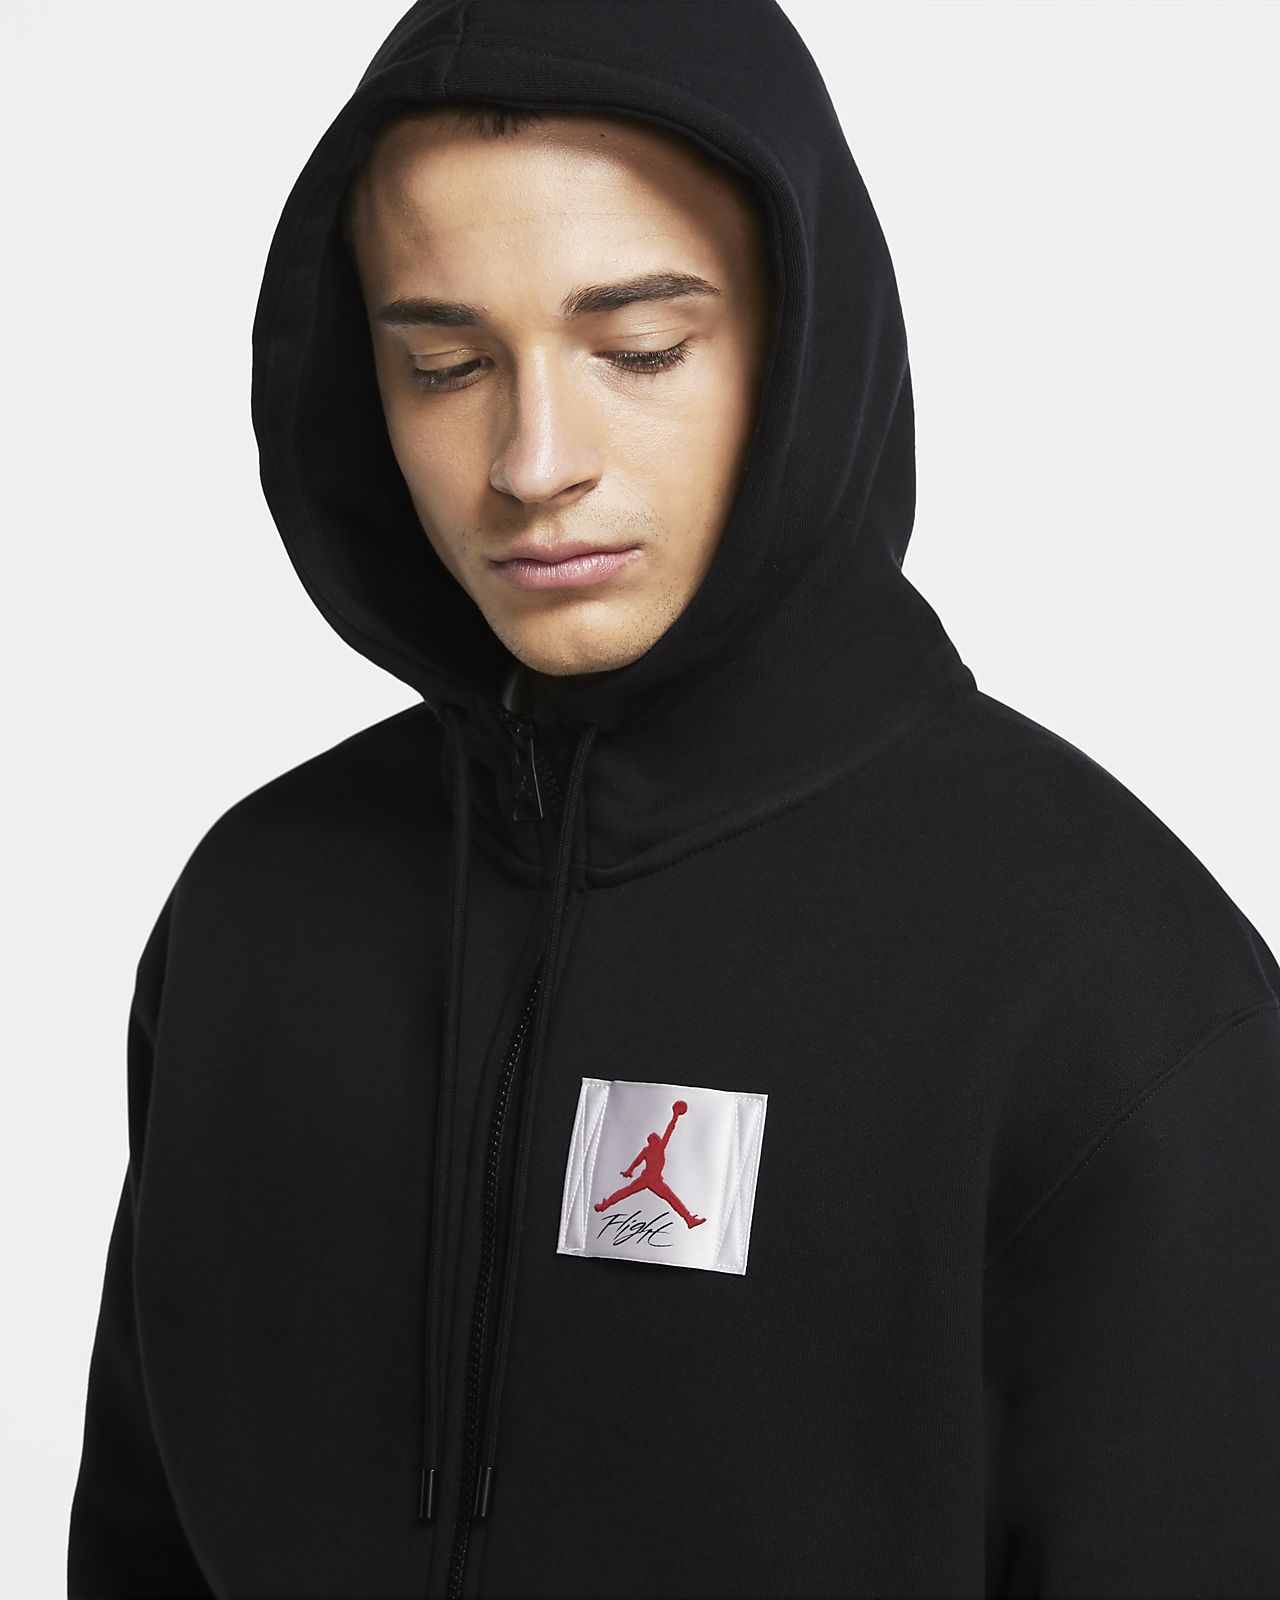 jordan flight fleece graphic hoodie